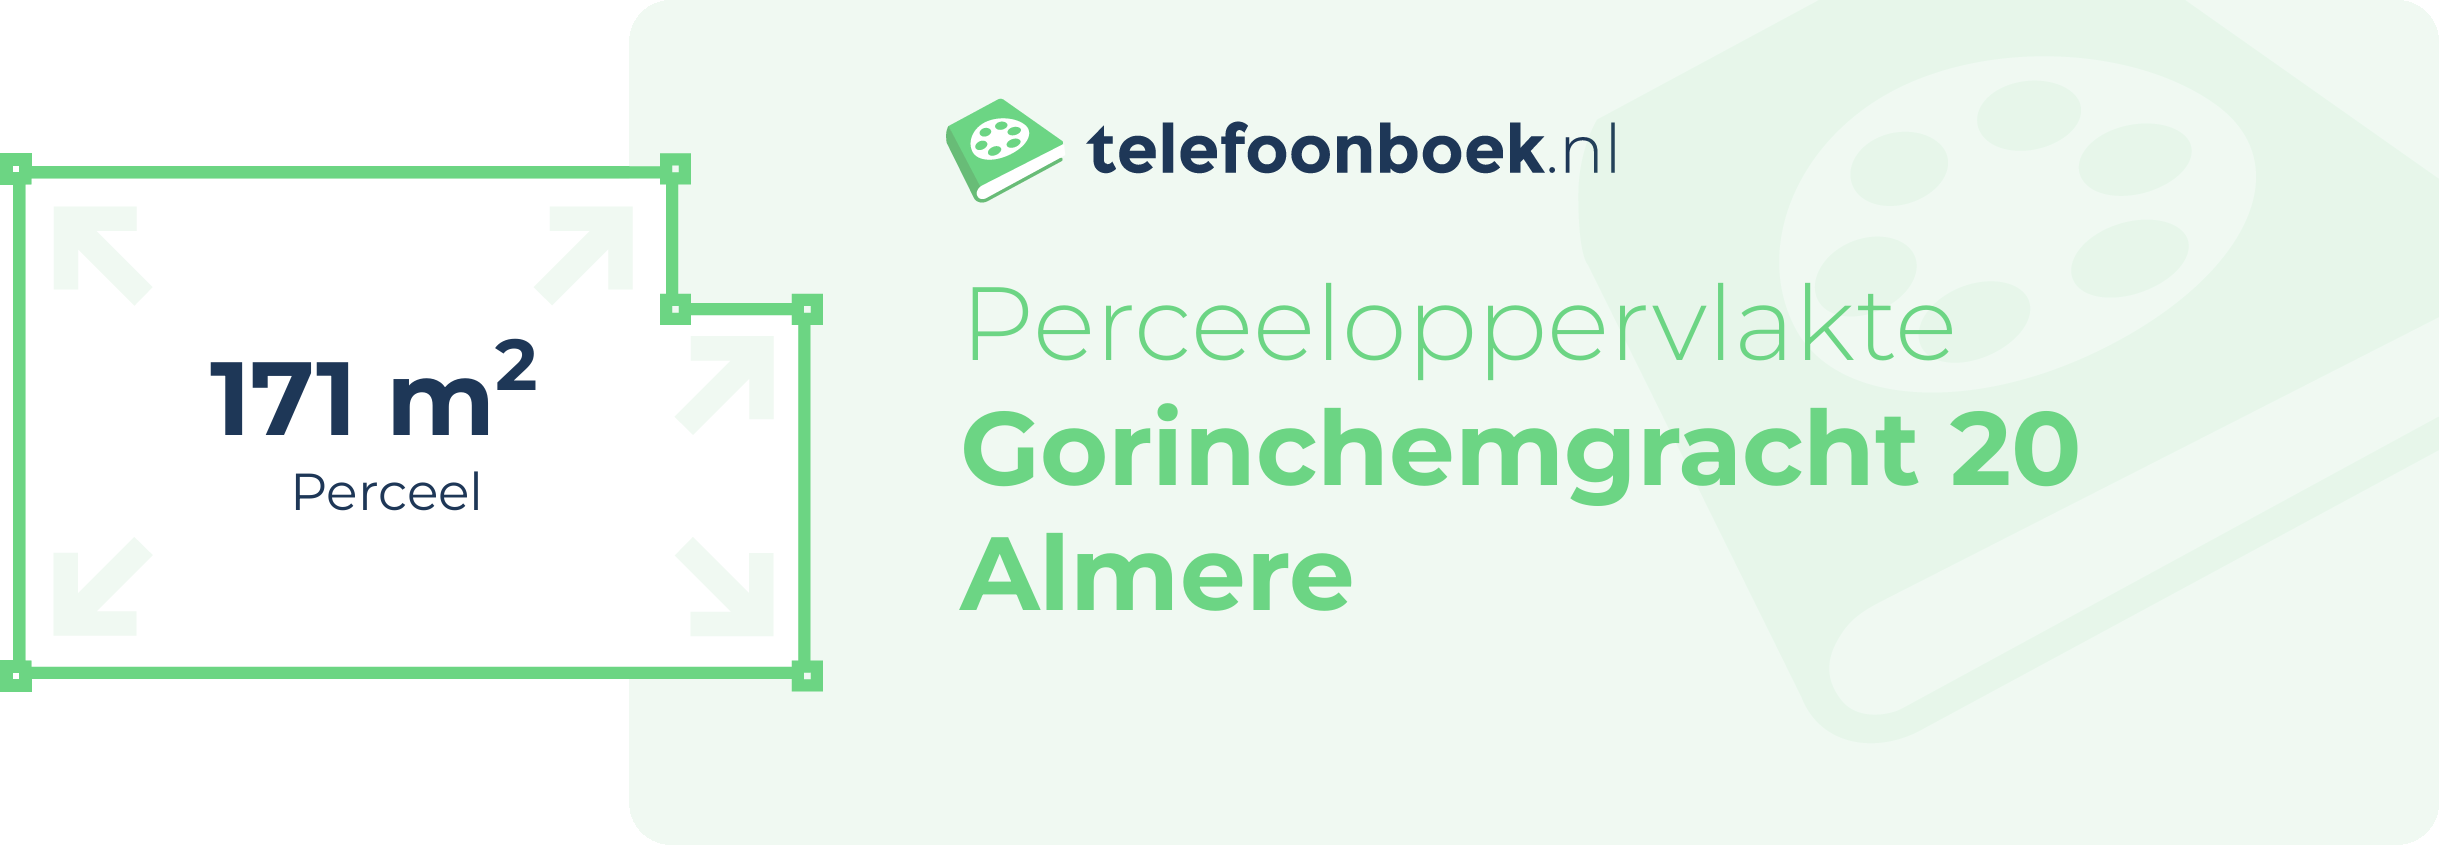 Perceeloppervlakte Gorinchemgracht 20 Almere